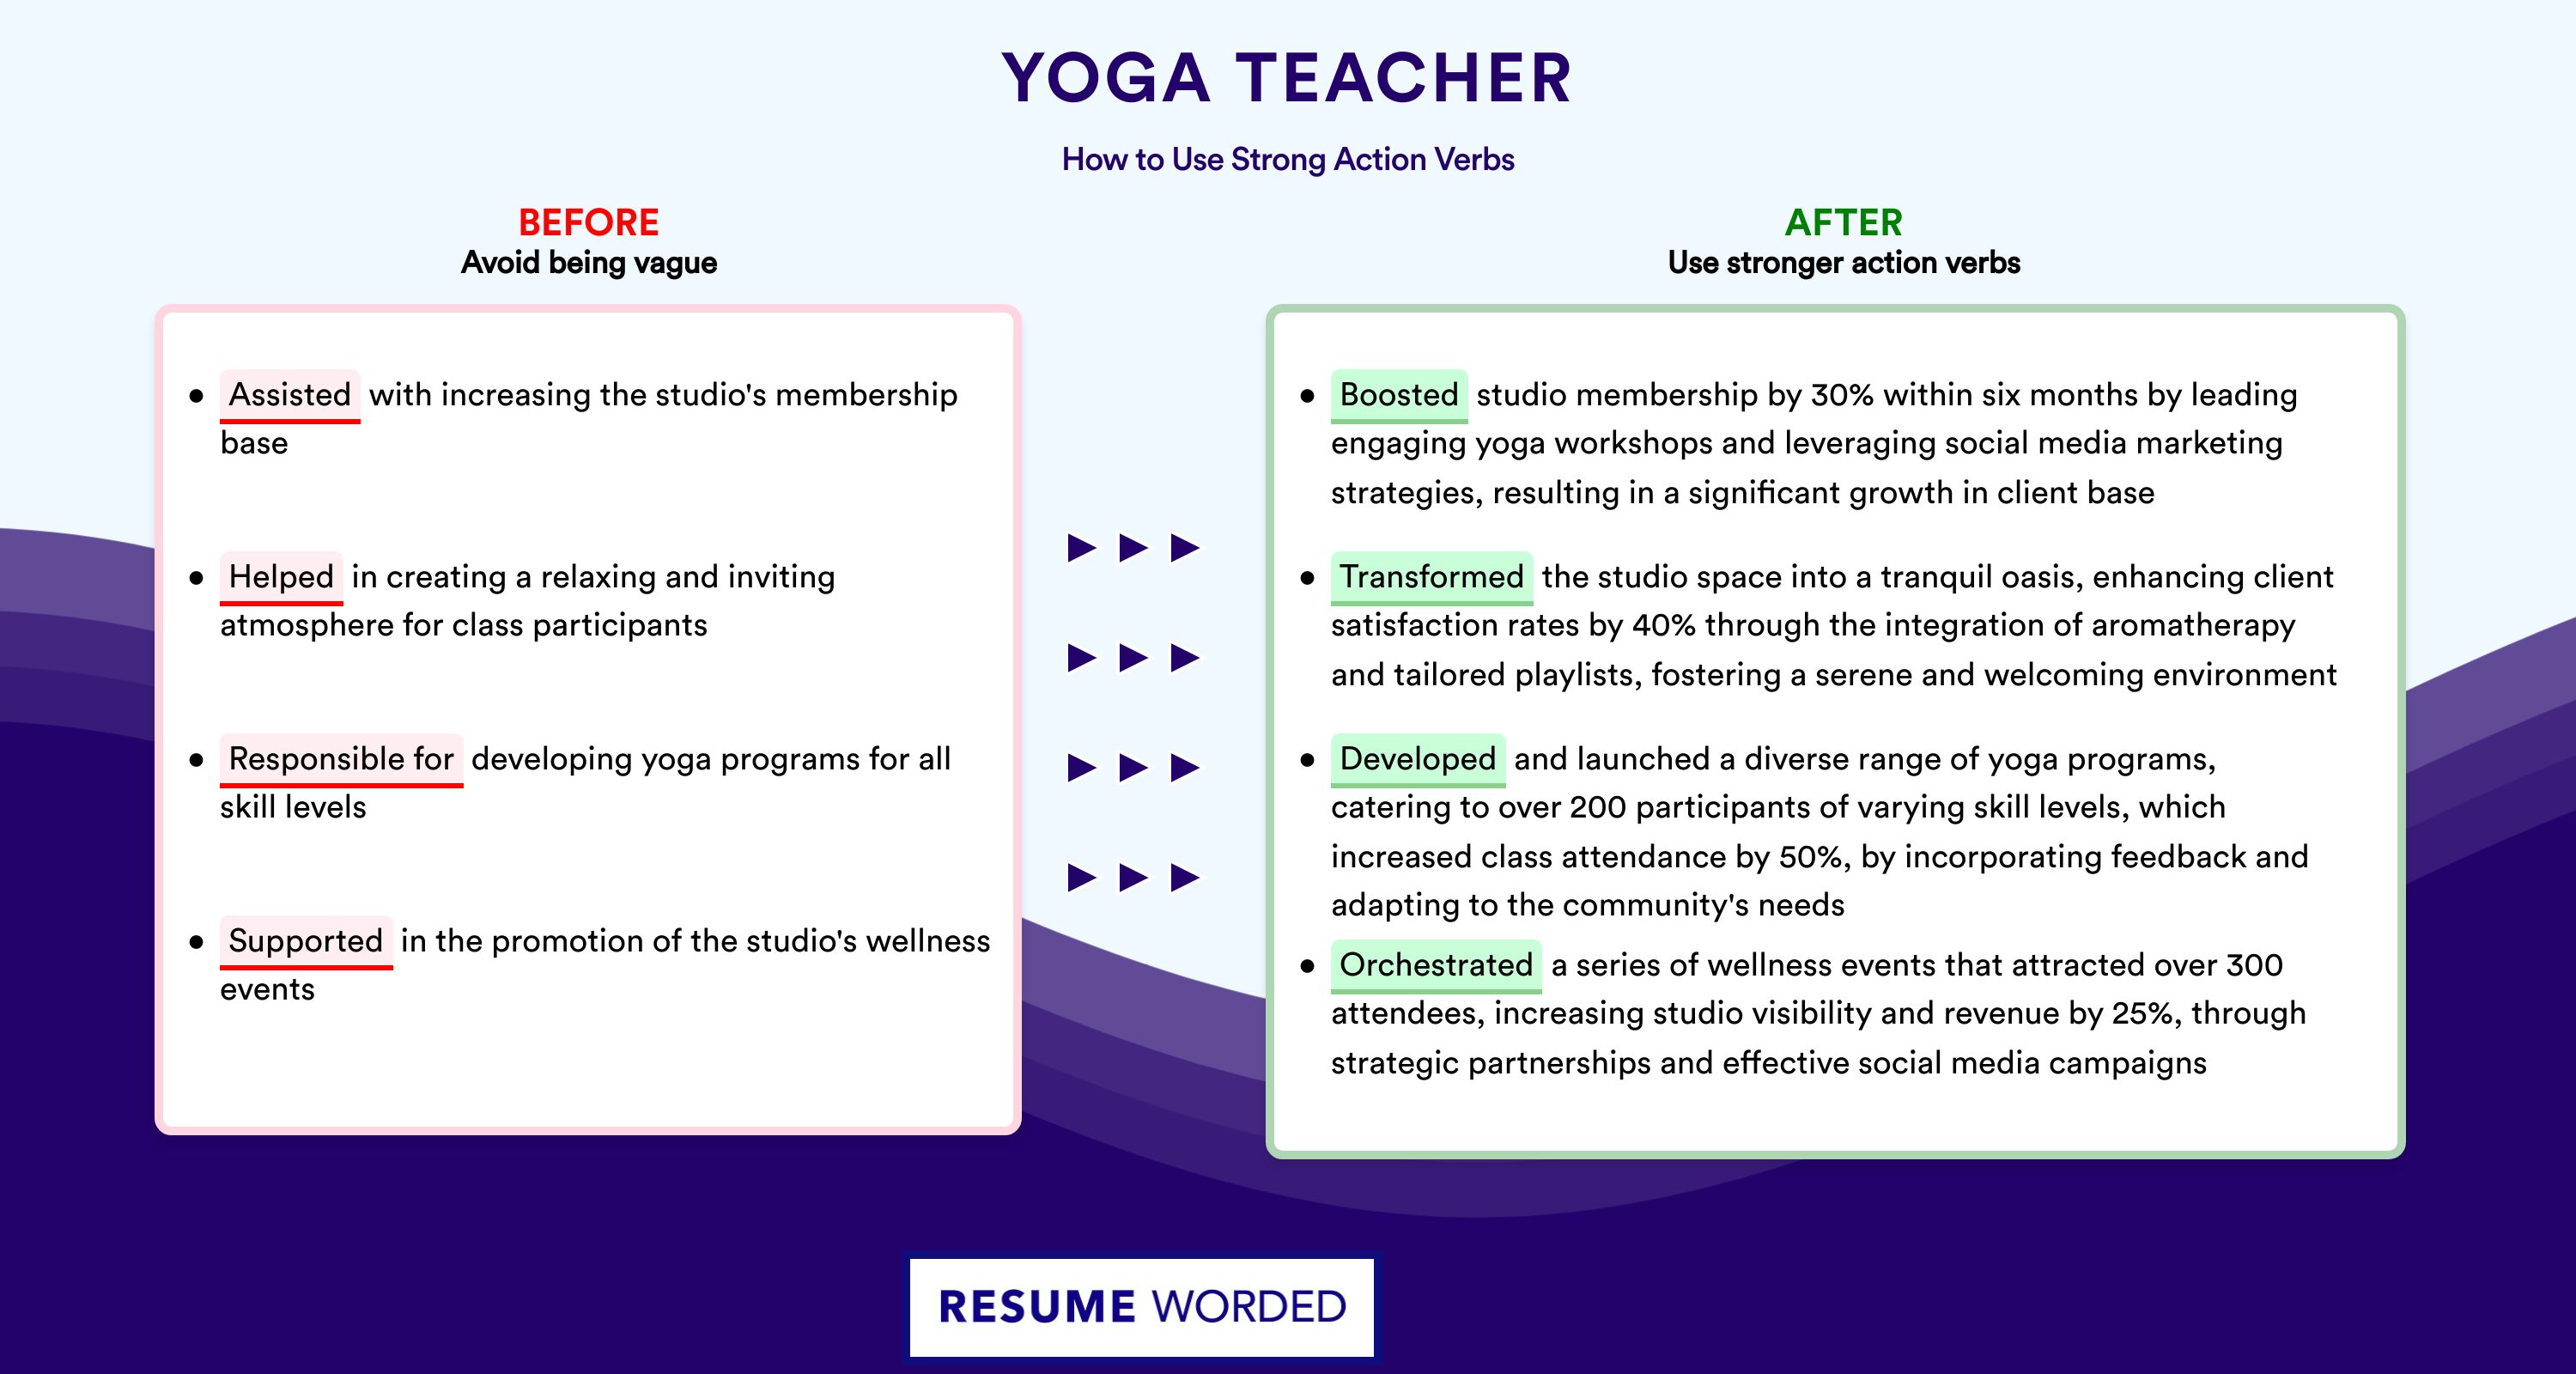 Action Verbs for Yoga Teacher